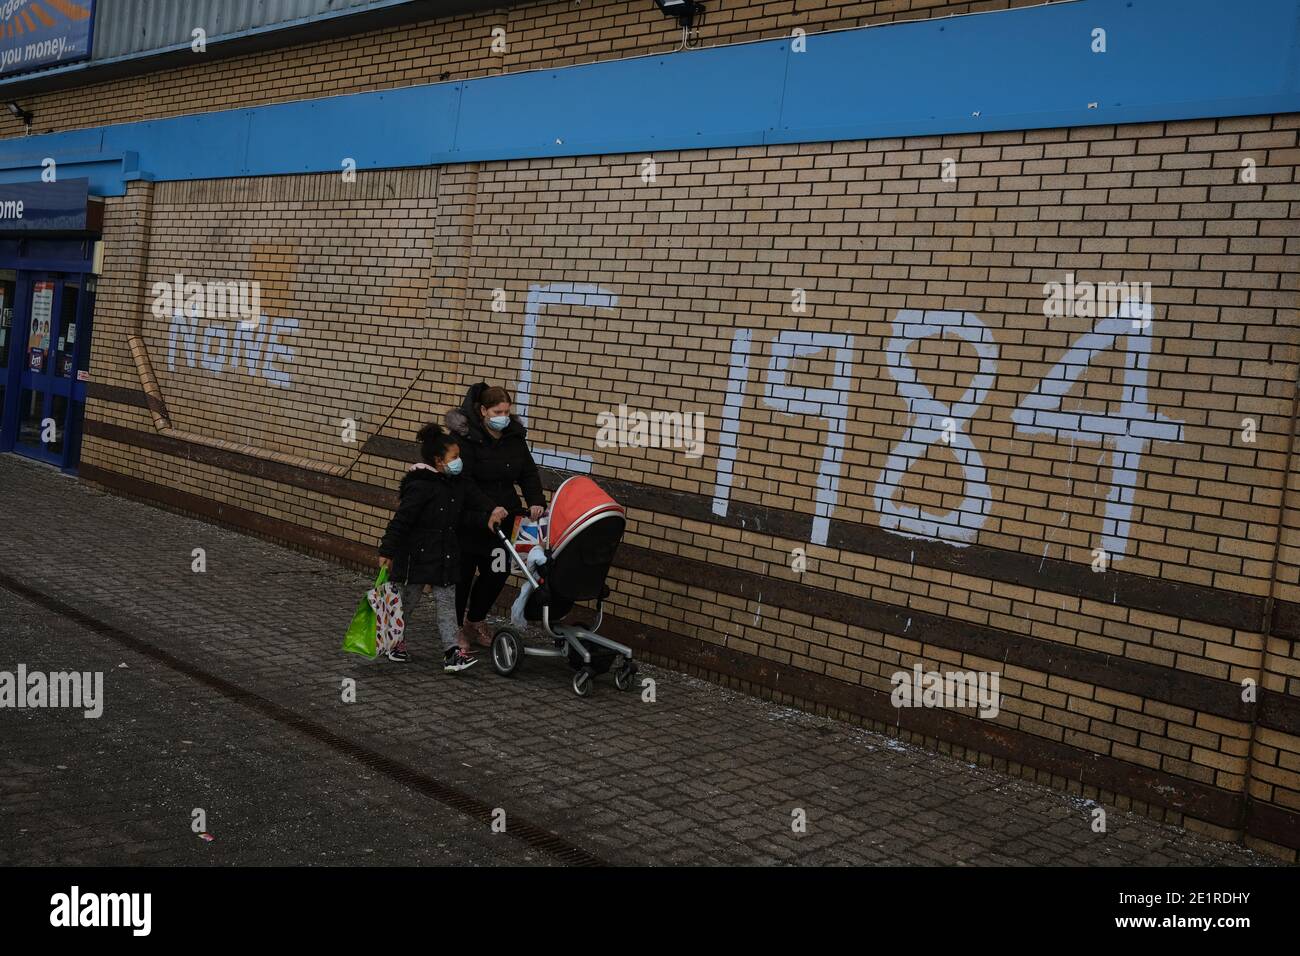 Glasgow, Royaume-Uni, 9 janvier 2021. Au cours de la semaine où le Royaume-Uni a vu des nombres records de cas de Covid-19 enregistrés, et des records quotidiens de décès, théorie de la conspiration graffiti déclarant Corona virus a hoax, Et comparer la situation au livre de George Orwell '1984', est apparu sur les murs de Drumchapelle dans le nord de la ville. Crédit photo : Jeremy Sutton-Hibbert/Alay Live News Banque D'Images